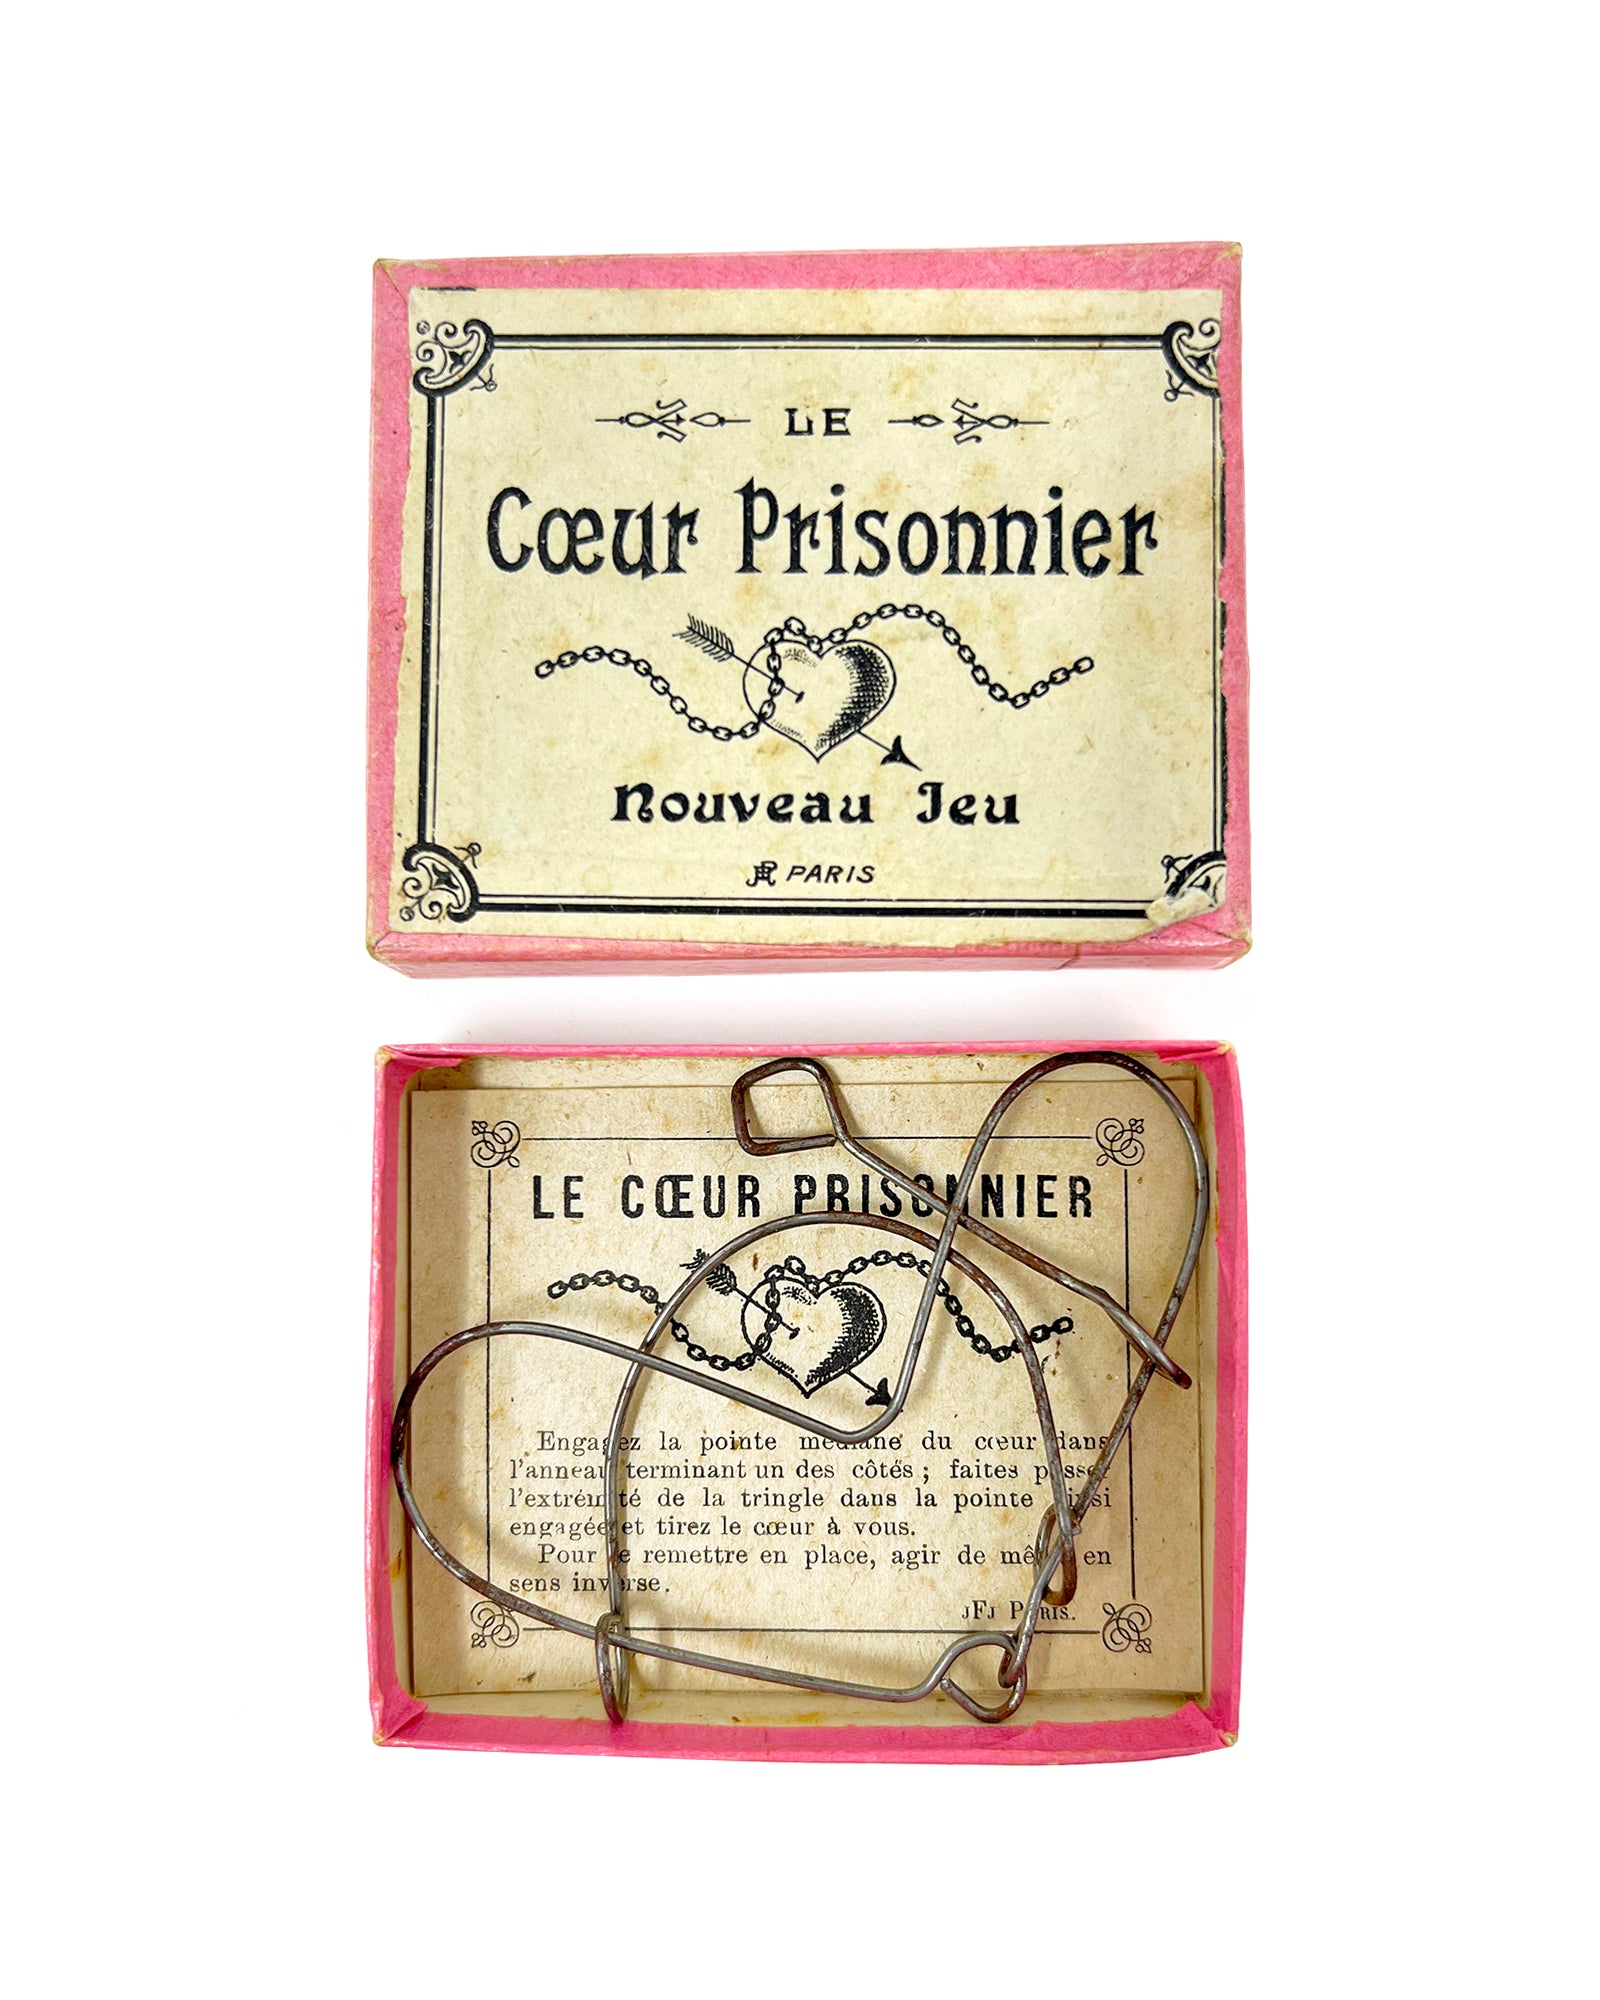 Antique French Tanglement Puzzle c.1900 – "Le Coeur Prisonnier"